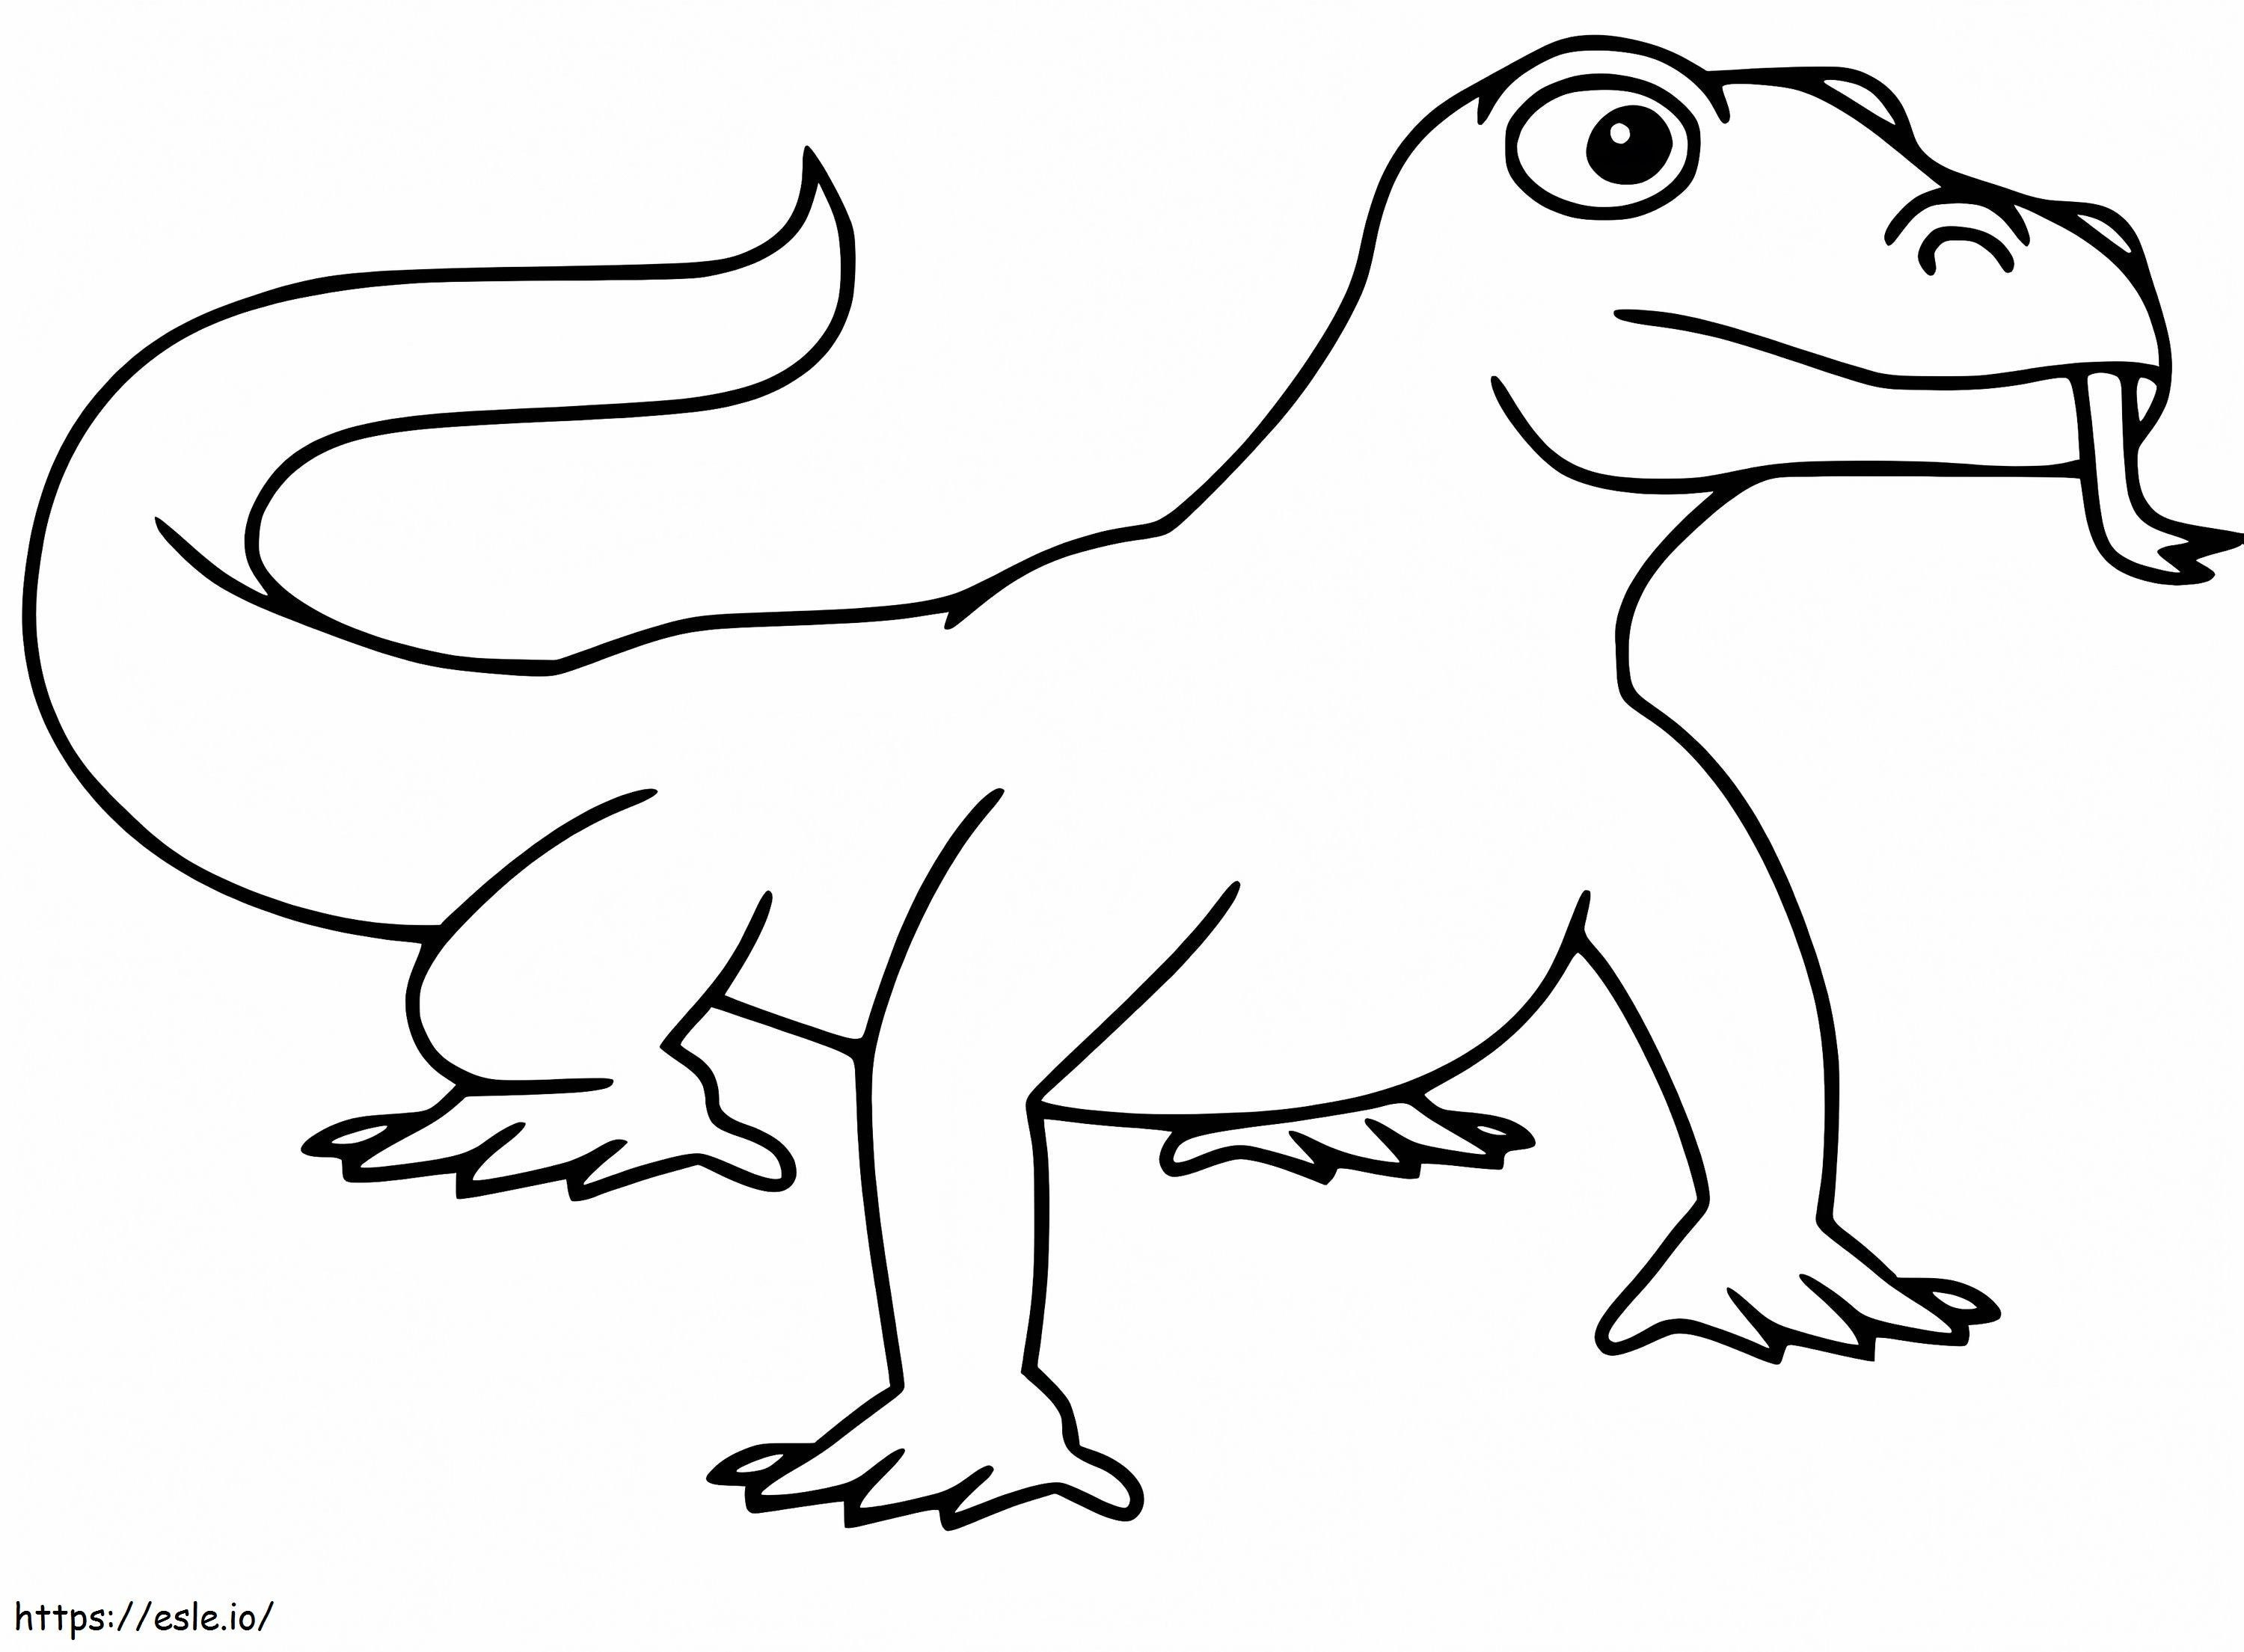 Cartoon Komodo Dragon coloring page